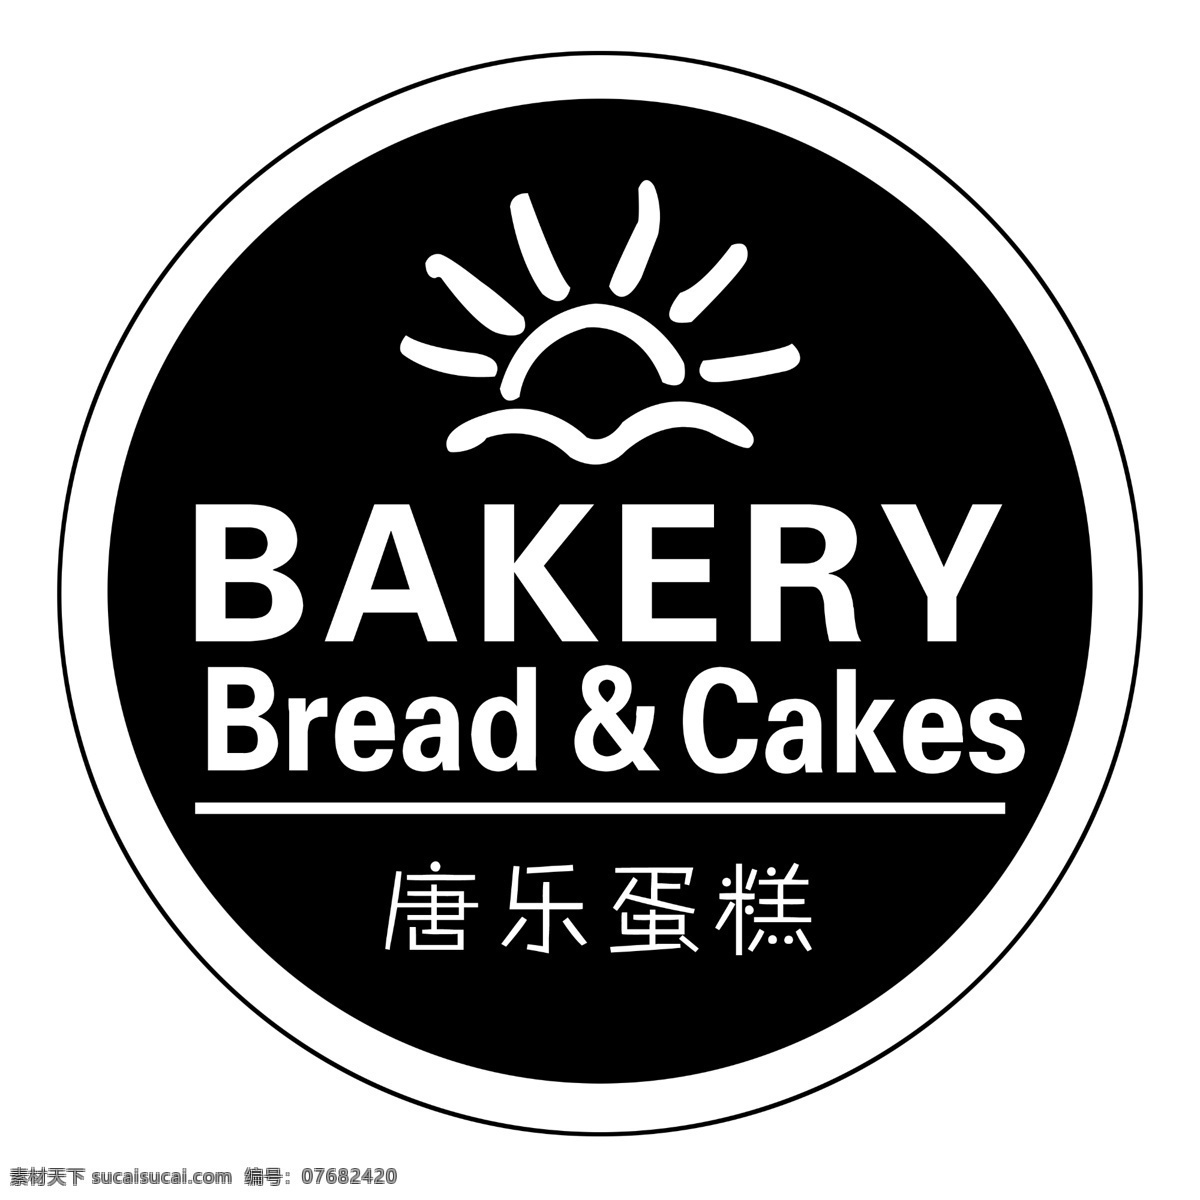 唐乐标志 bakery bread cakes 唐乐蛋糕 logo 室外标志 logo设计